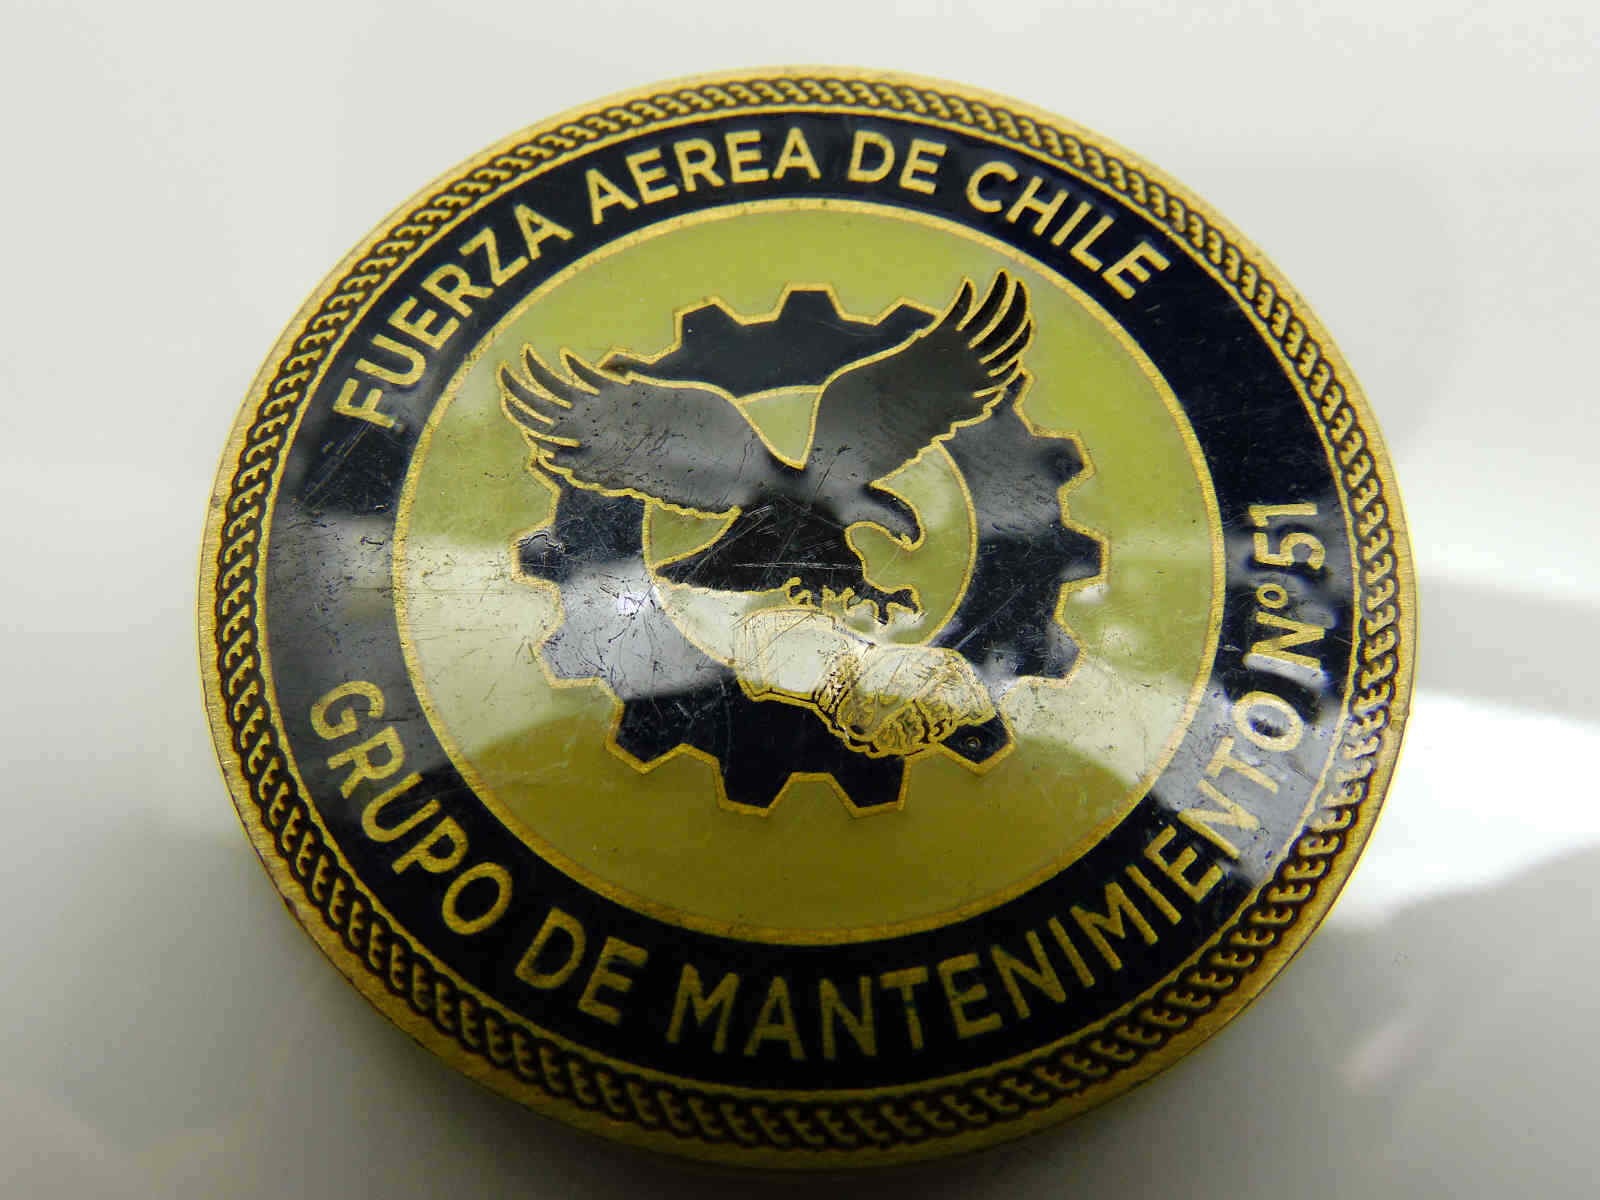 FUERZA AEREA DE CHILE GRUPO DE MANTENIMIENTON 51 CHALLENGE COIN